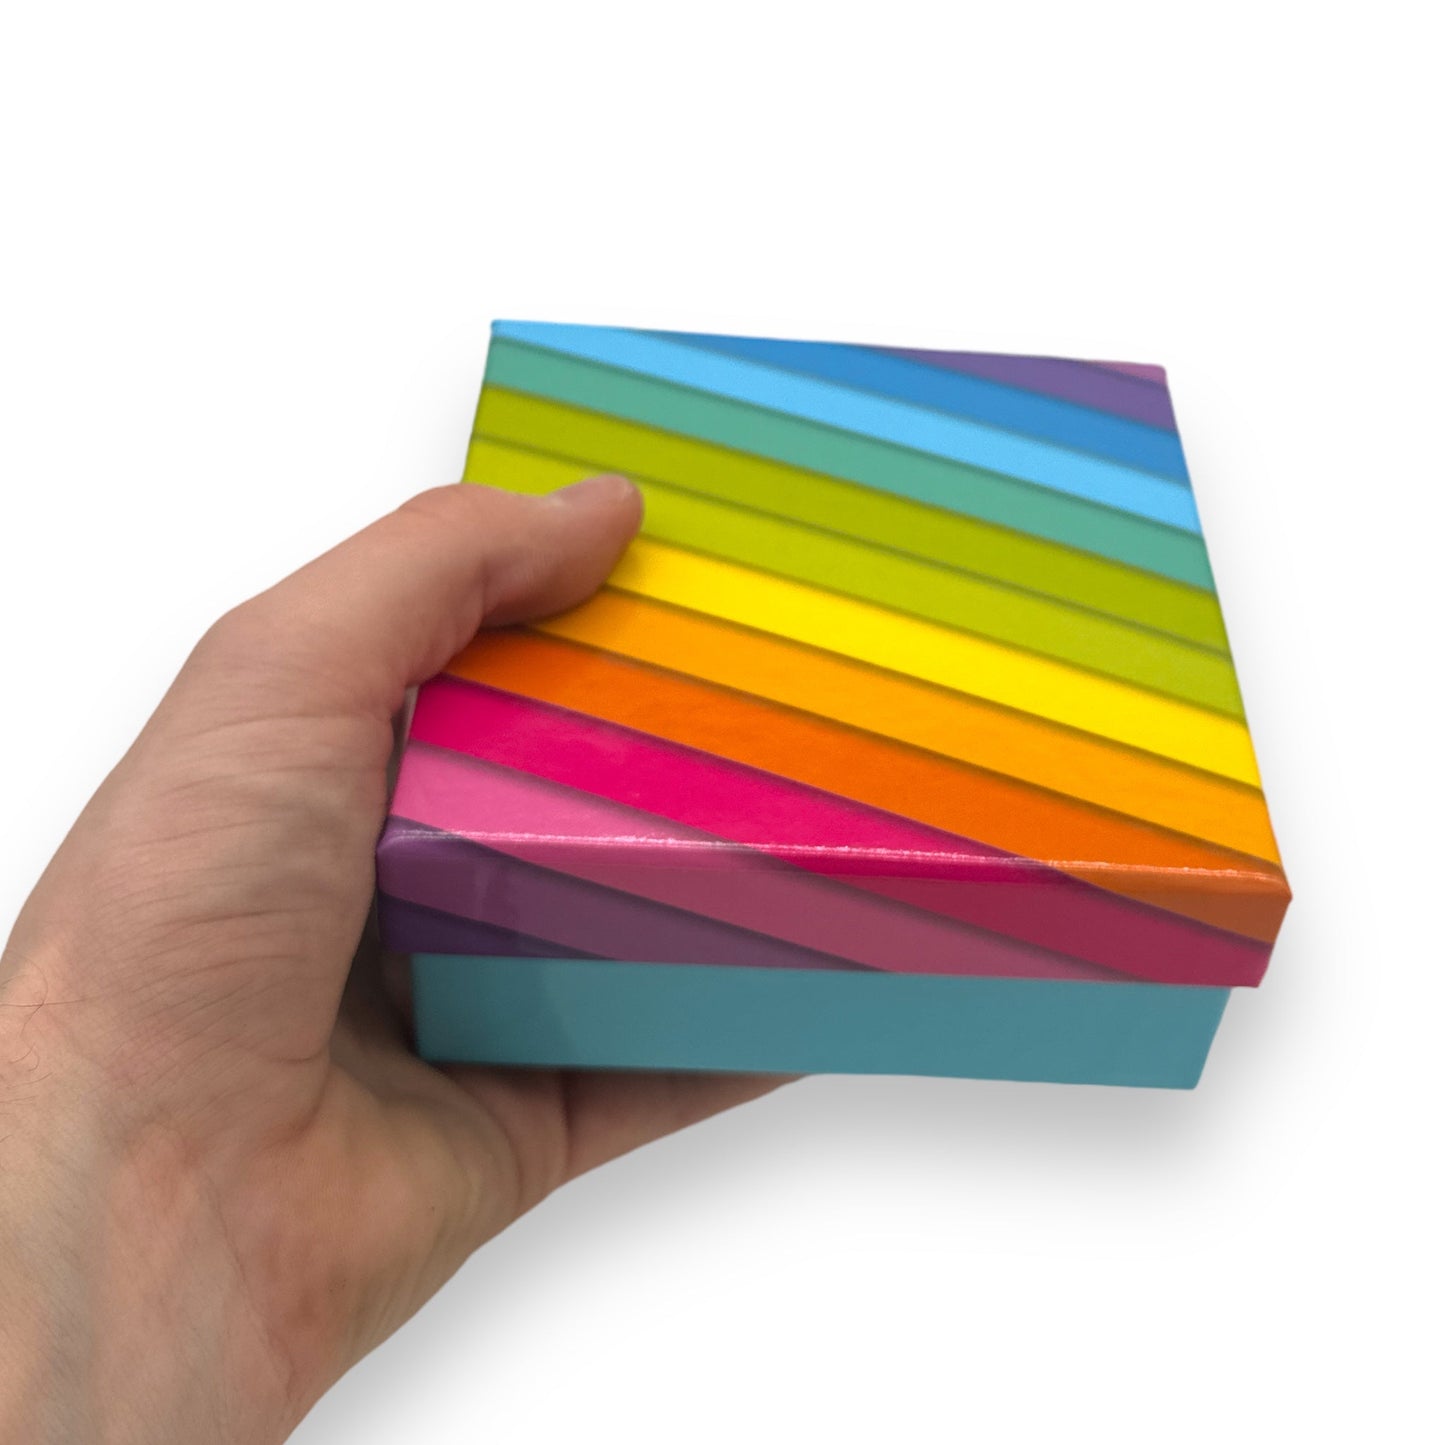 Regenboog Kartonnen Doos - 12x5,2 cm - Voeg Kleur en Stijl Toe aan Je Opbergruimte